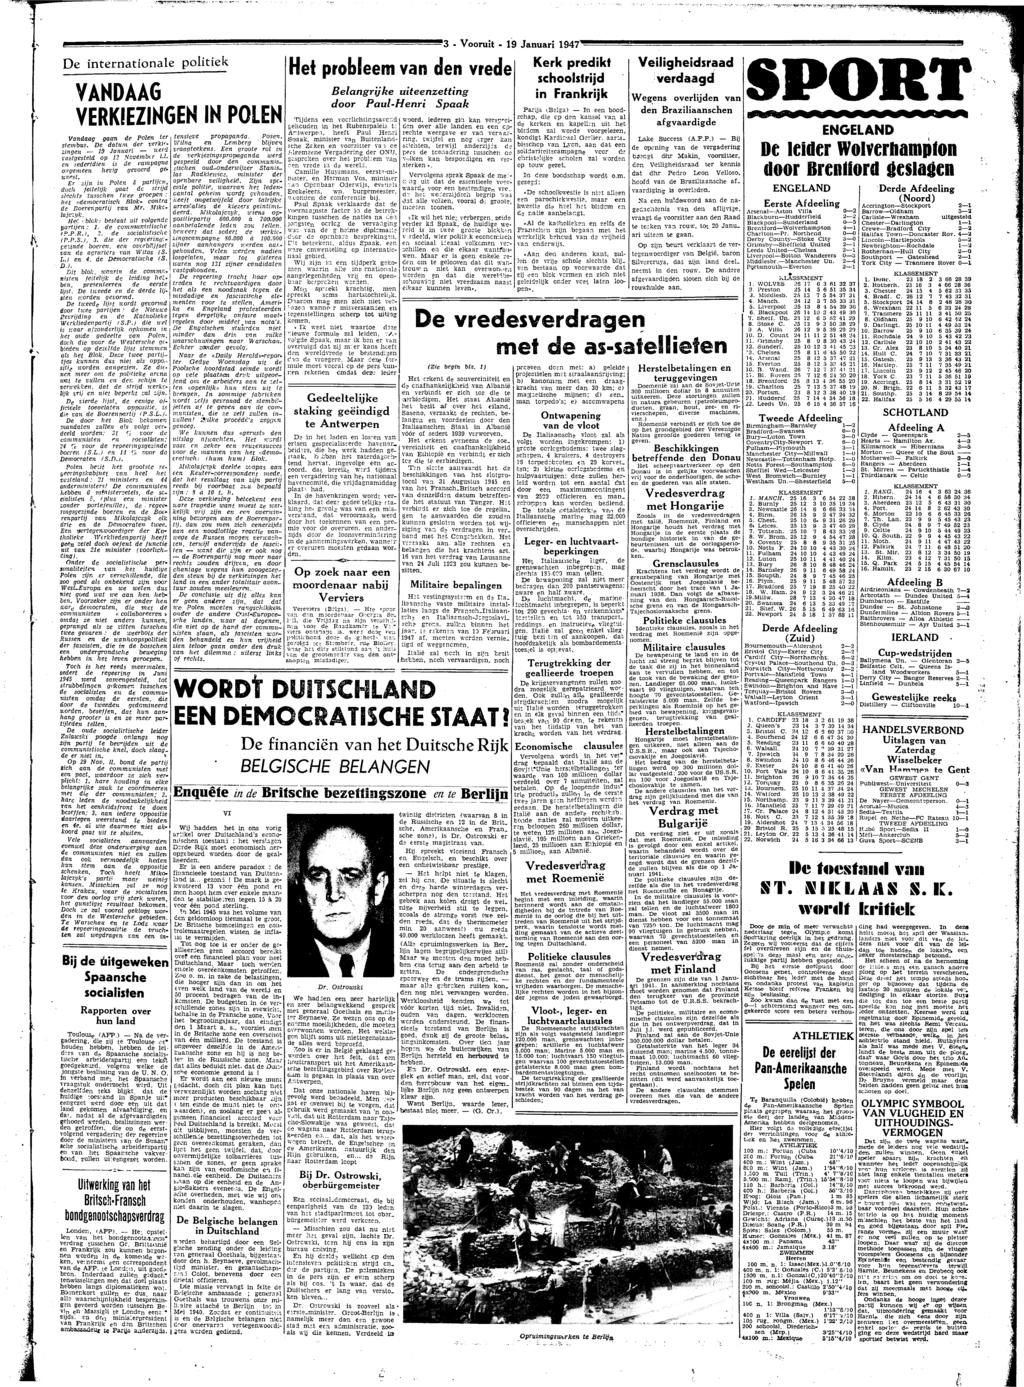 '3 - Vooruit - 19 Januari 1947" K De inrnationale politiek VANDAAG VERKIEZINGEN IN POLEN Vandaag g de Pol r smbus.